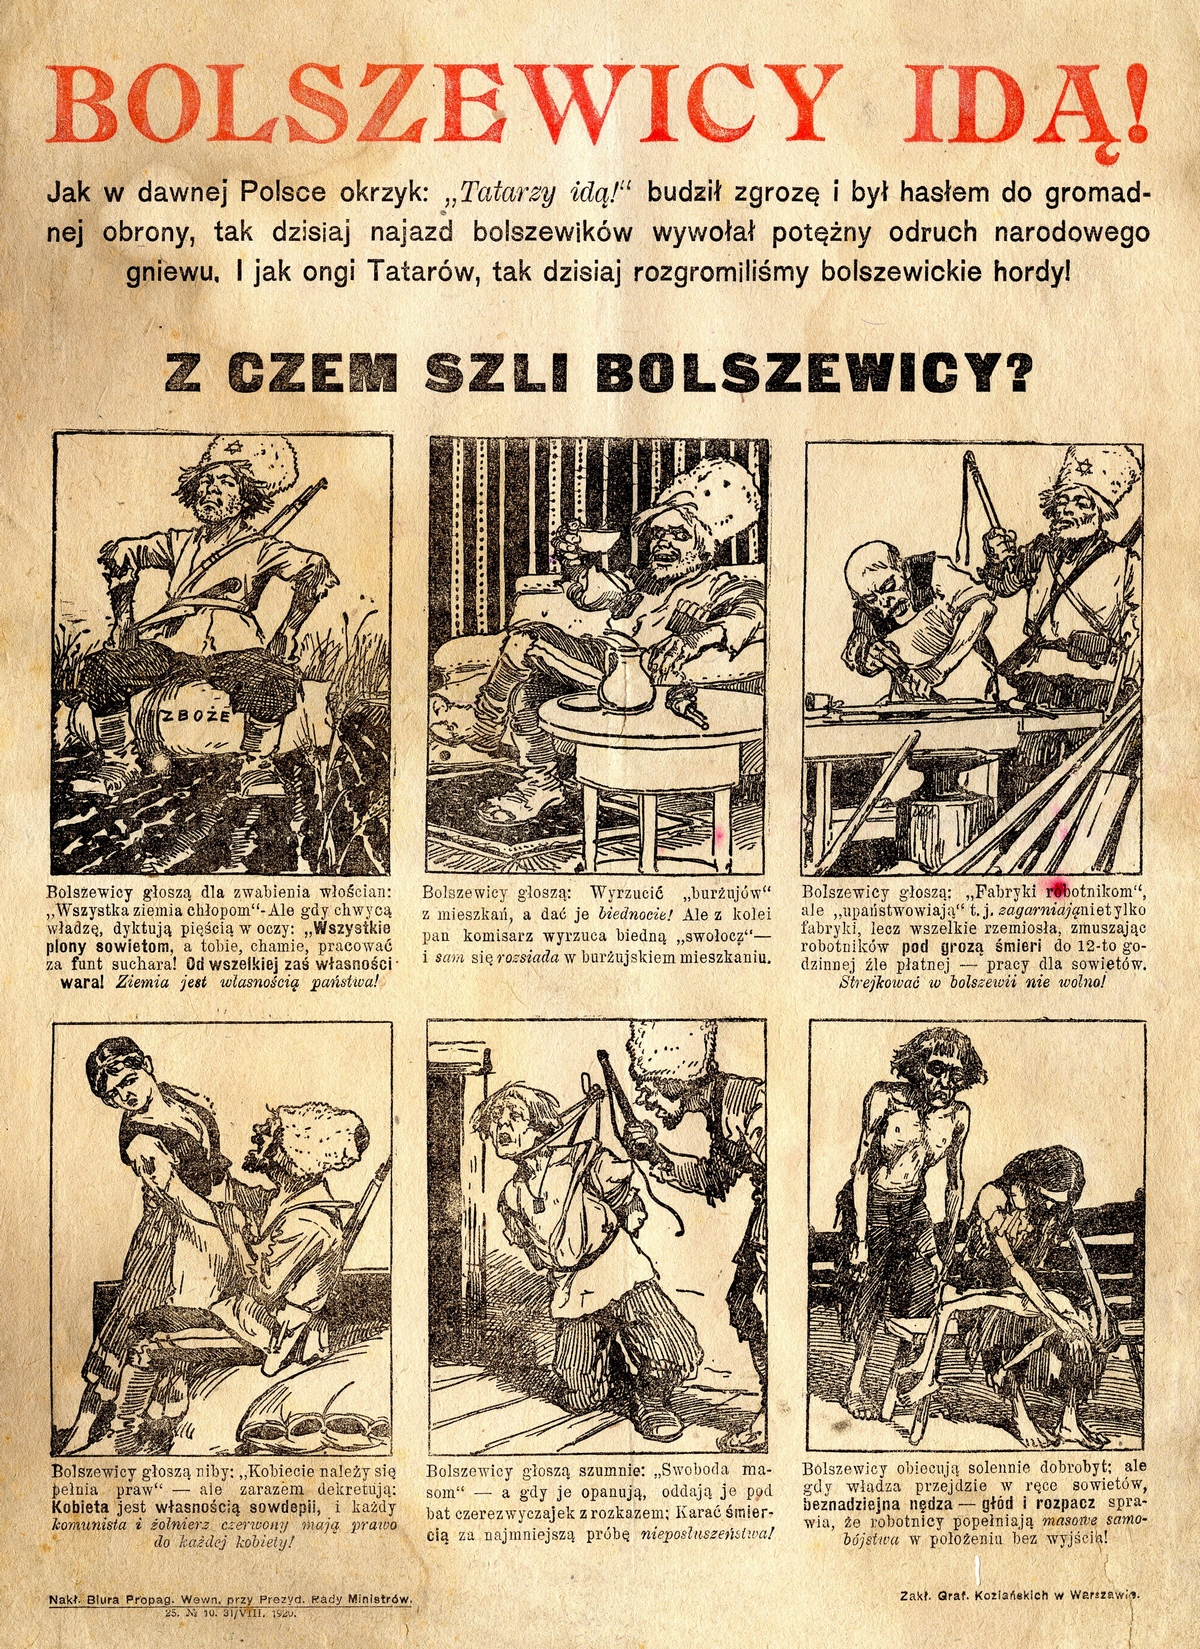 Takich antybolszewickich plakatów pojawiało się w polskiej prasie w latach 1919-1920 mnóstwo. Z jednej strony uważano ich za słabych przeciwników, z drugiej strony - obawiano się, że komunizm zdoła "zalać" Europę.